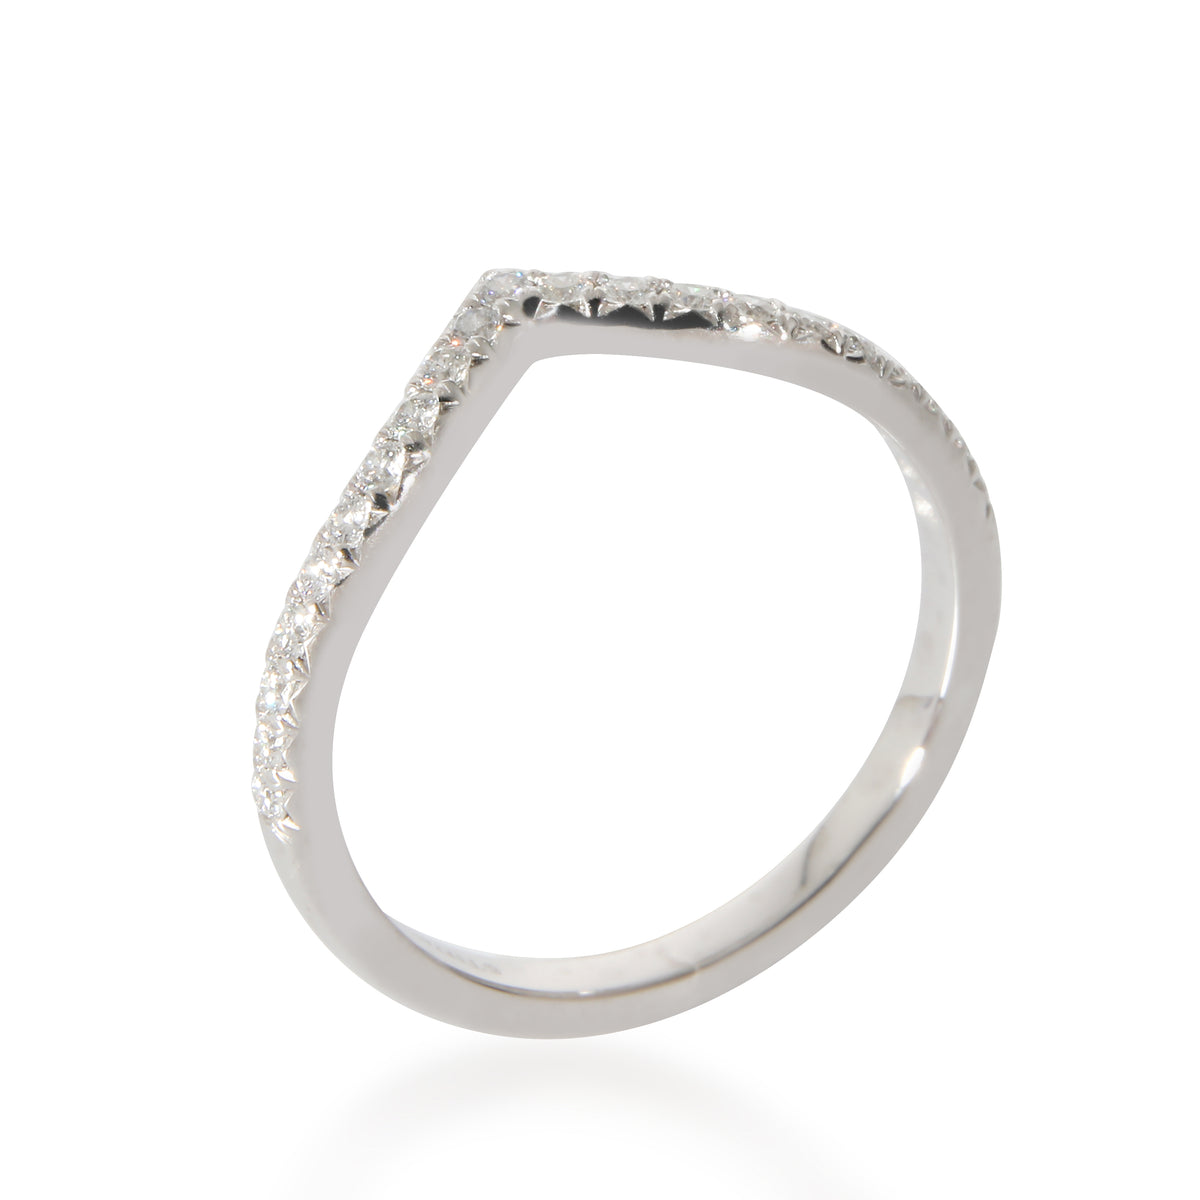 Tiffany & Co. Soleste Diamond Ring in Platinum 0.17 CTW